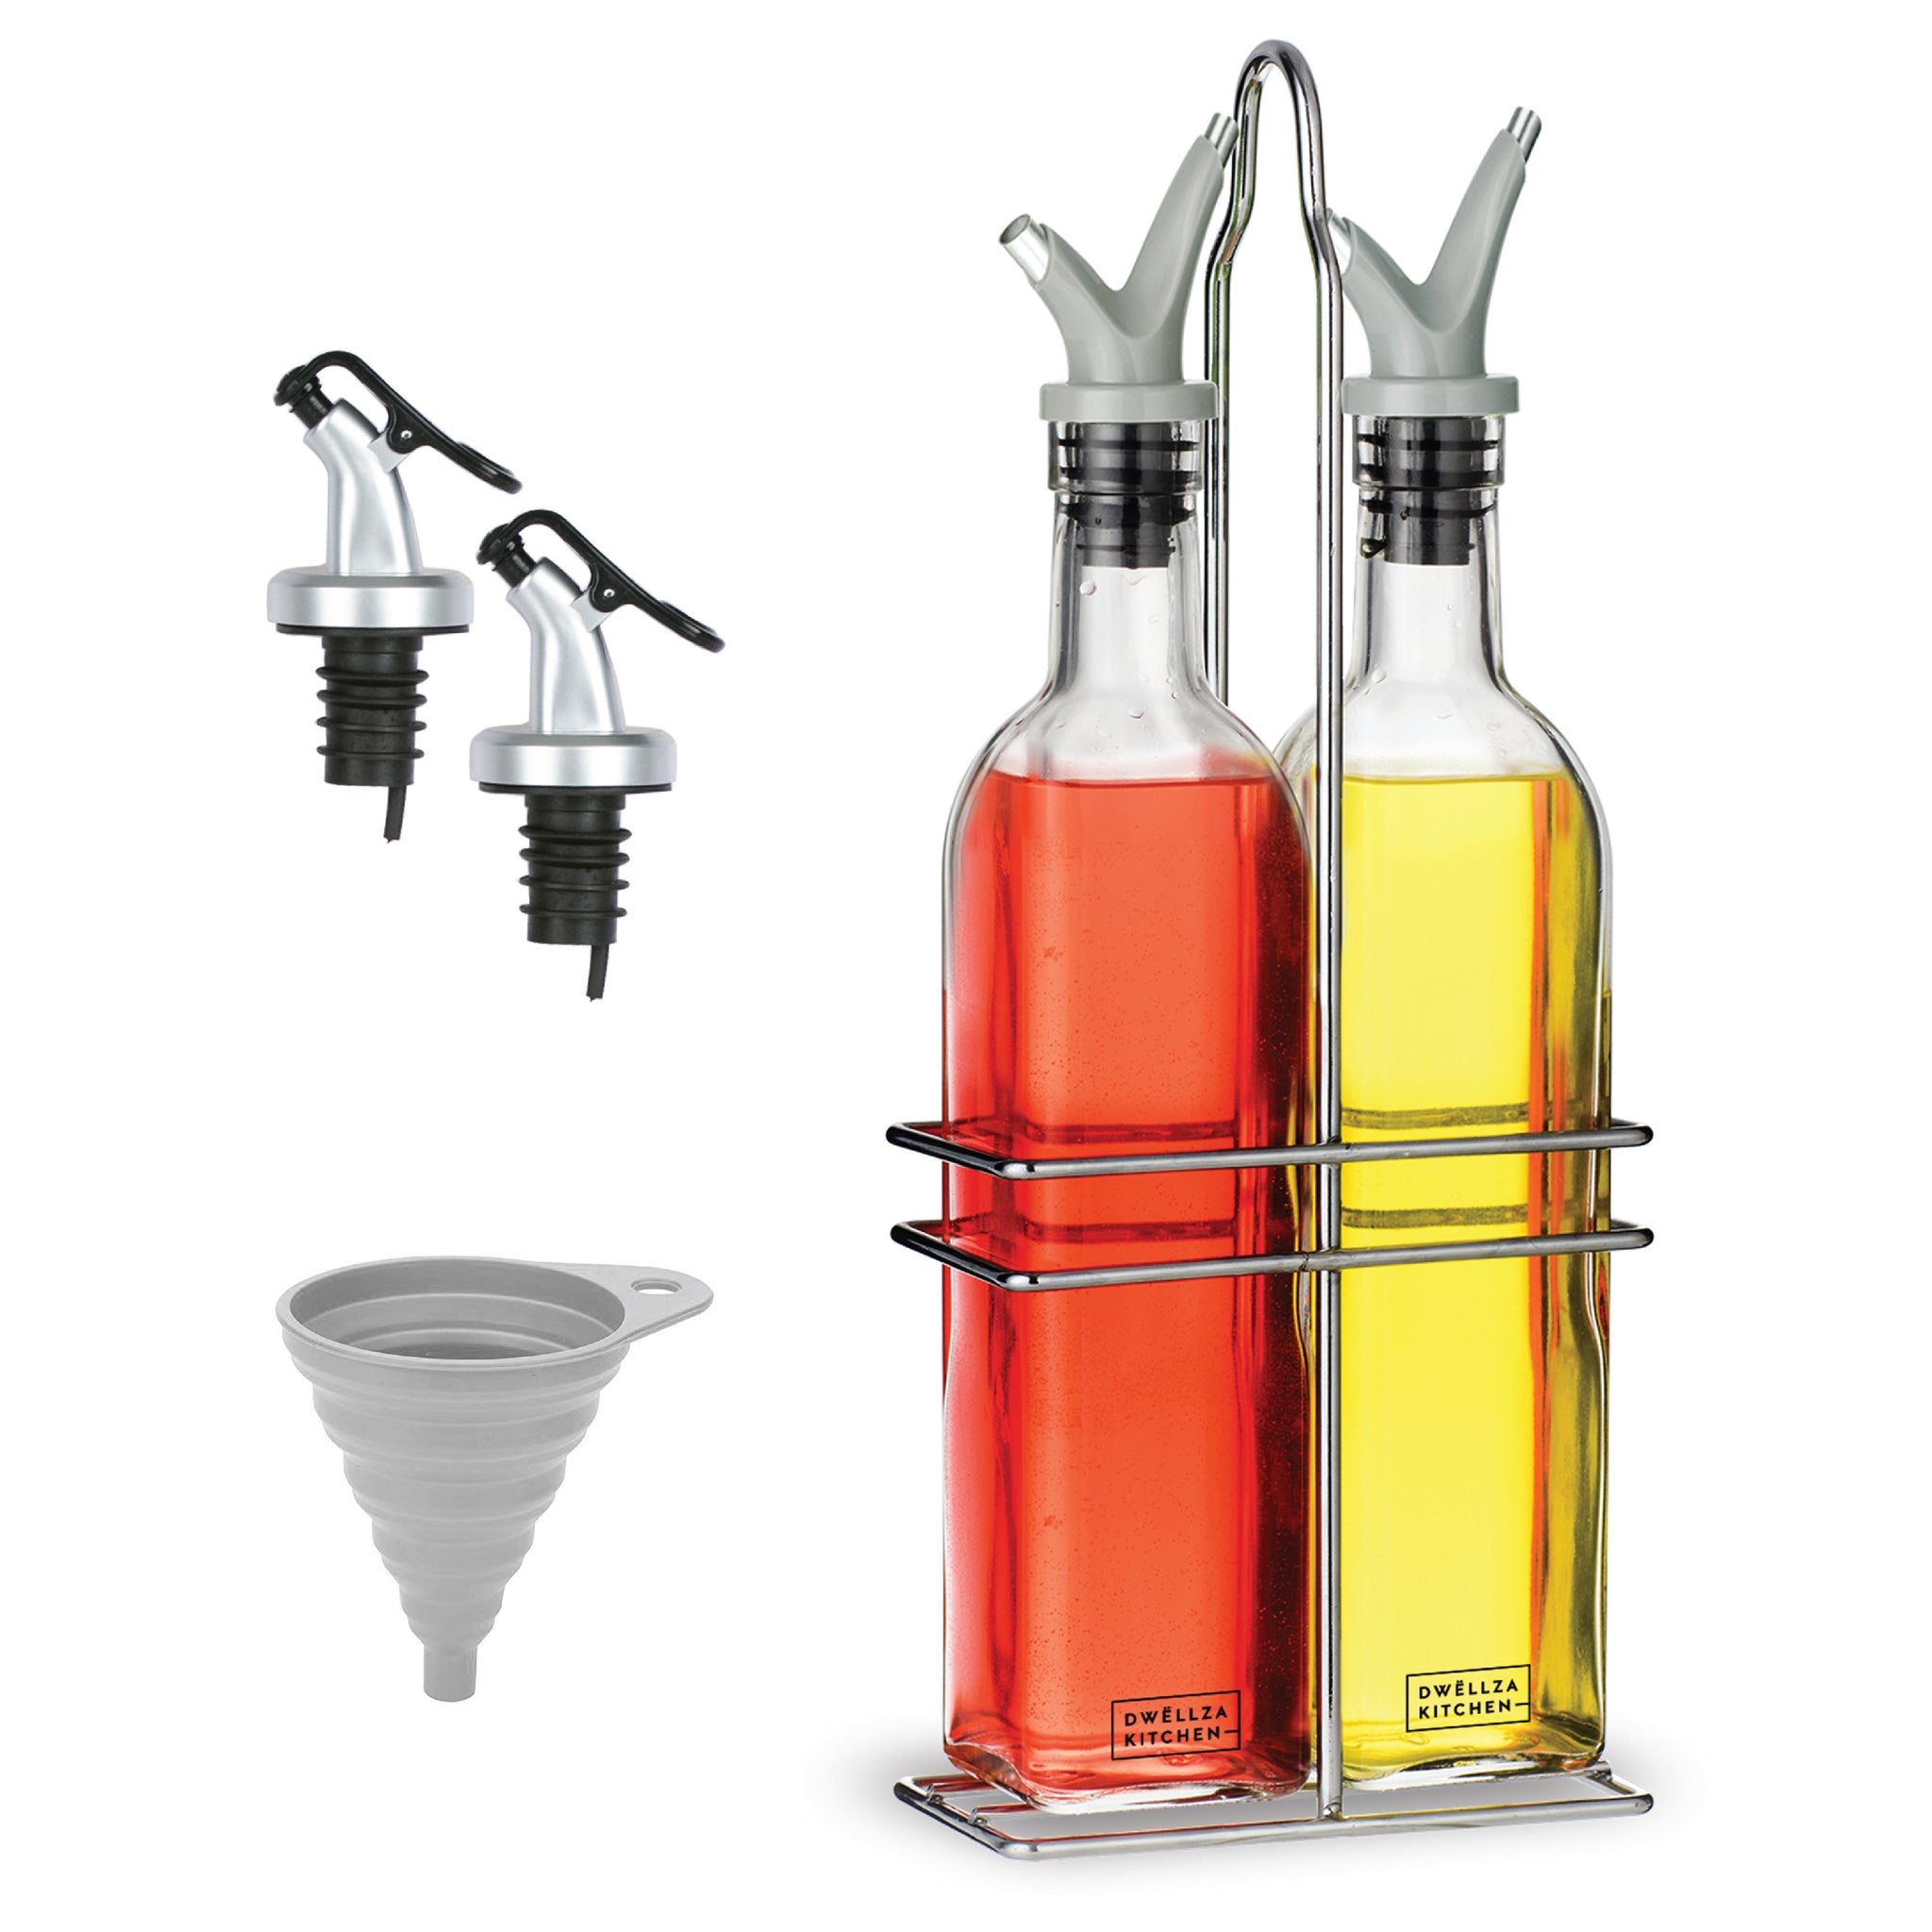 Oil & Vinegar Dispenser - Shop